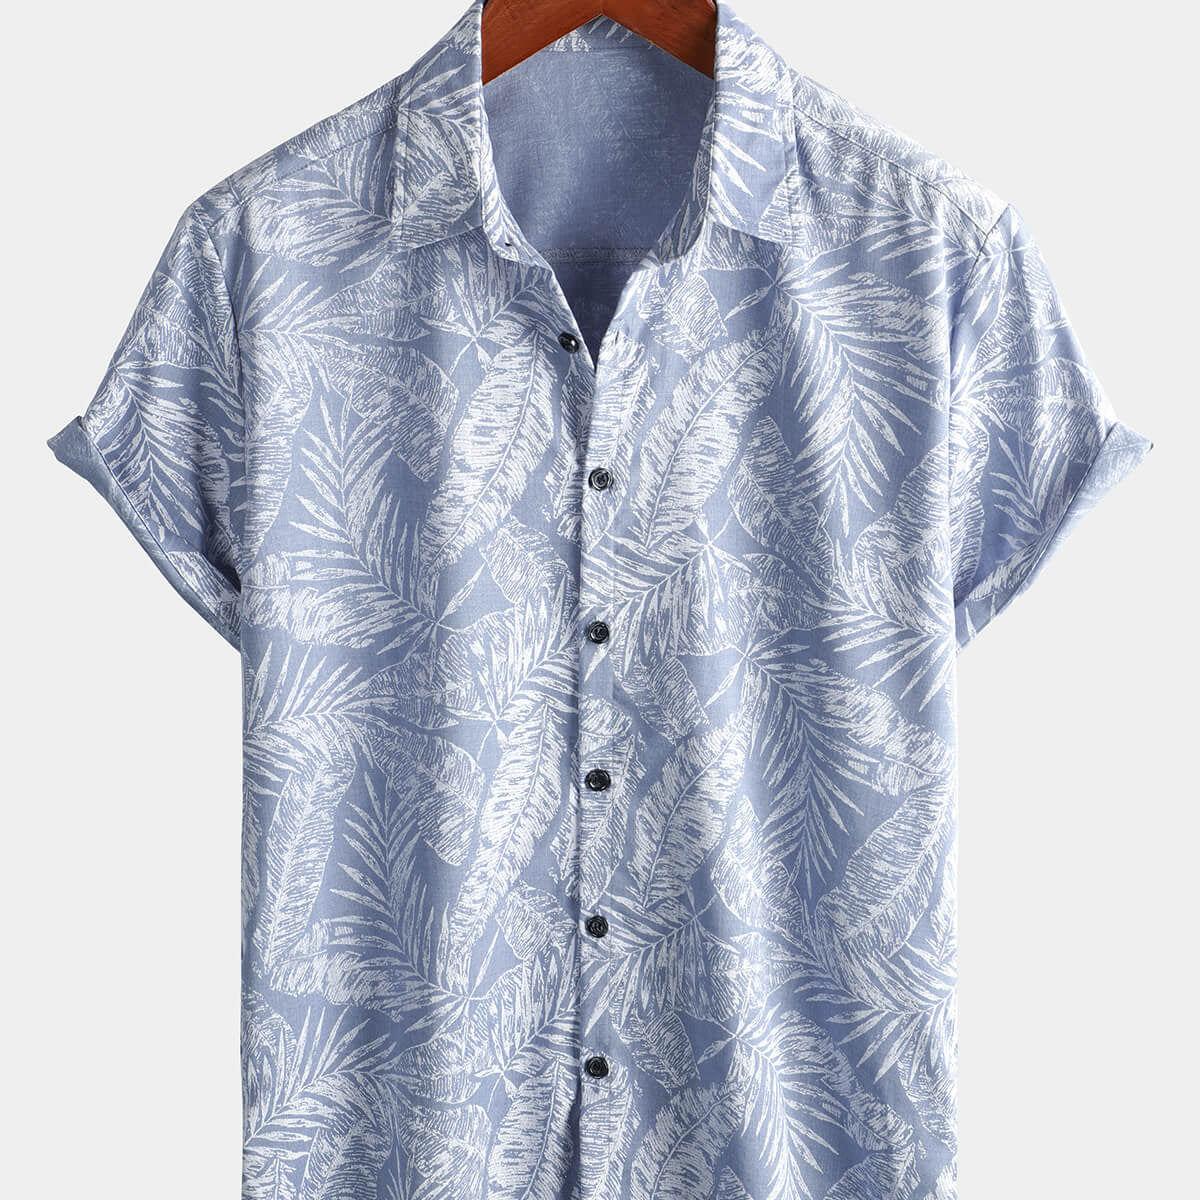 Men's Blue Tropical Hawaiian Summer Cotton Short Sleeve Shirt